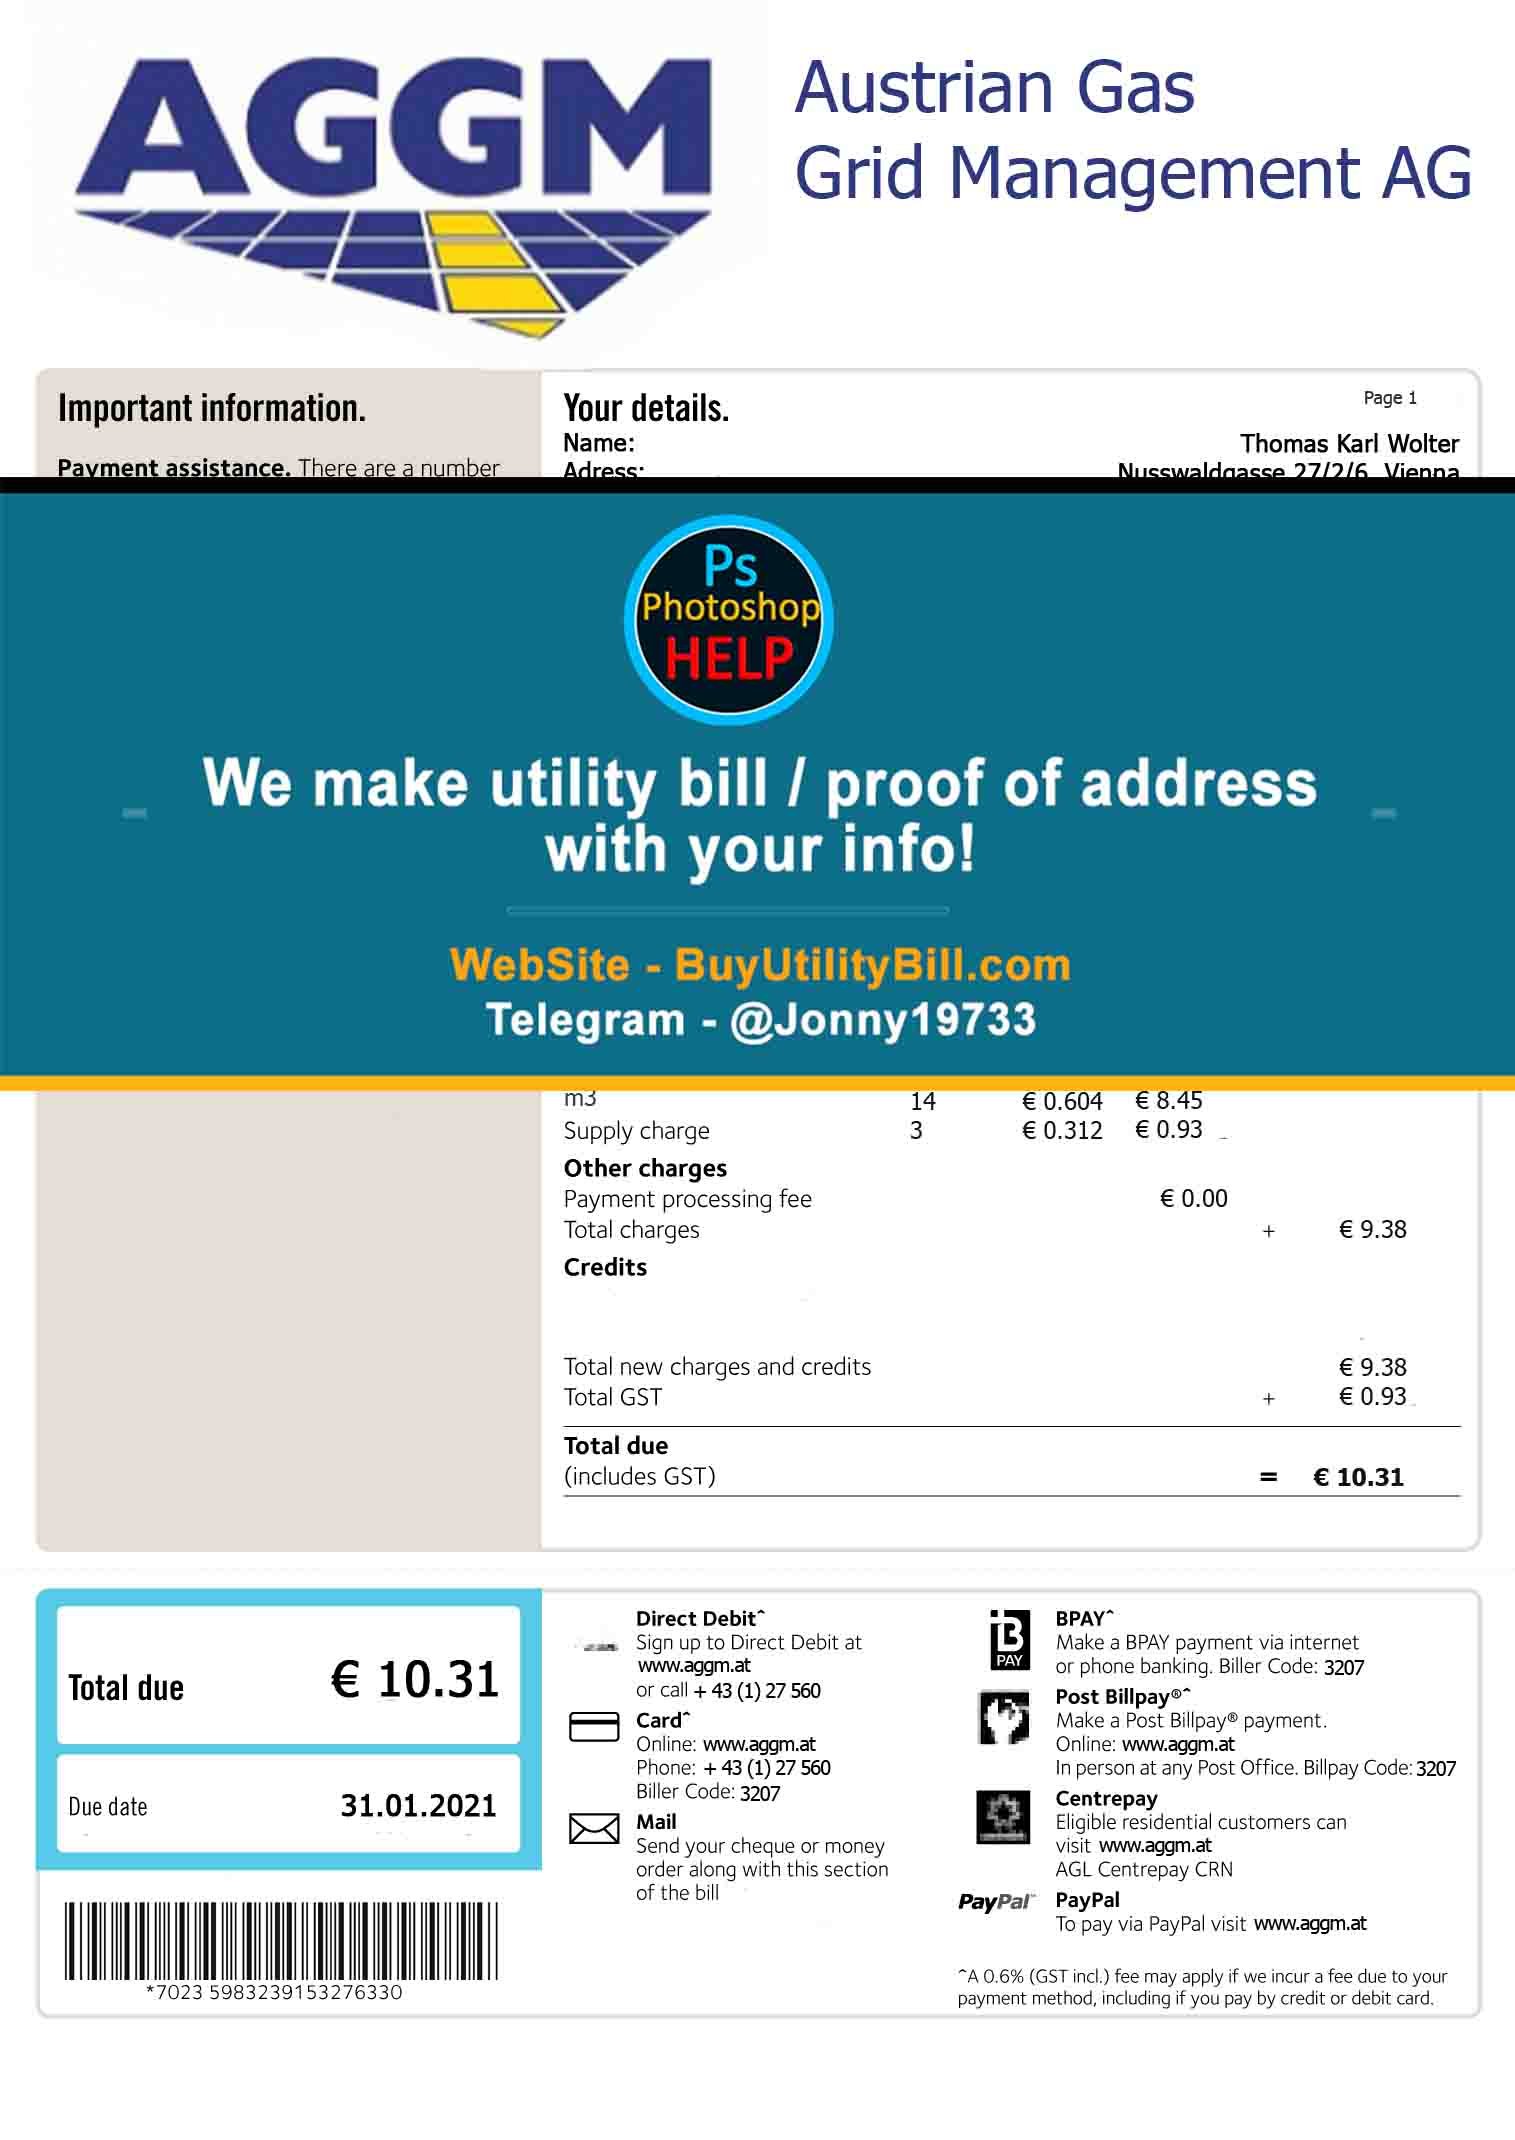 Austria AGGM Gas Fake Utility Bill Fake Utility bill